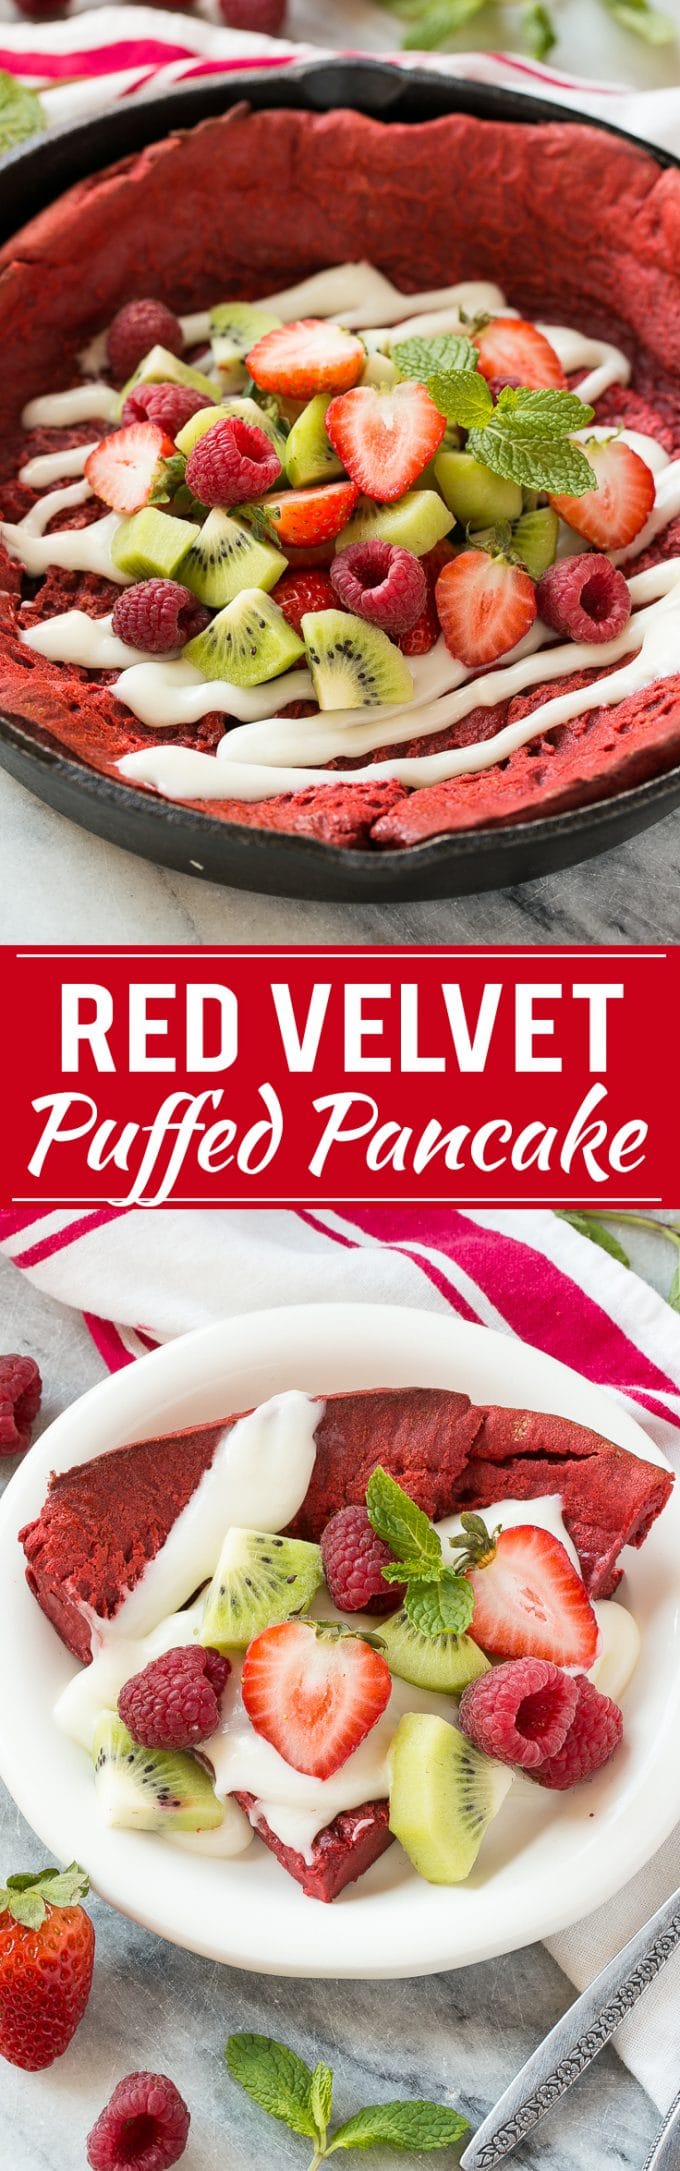 Red Velvet Puffed Pancake Recipe | Red Velvet Puffed Pancake | Red Velvet Giant Pancake | Red Velvet Dutch Baby Pancake | Best Dutch Baby Puffed Pancake